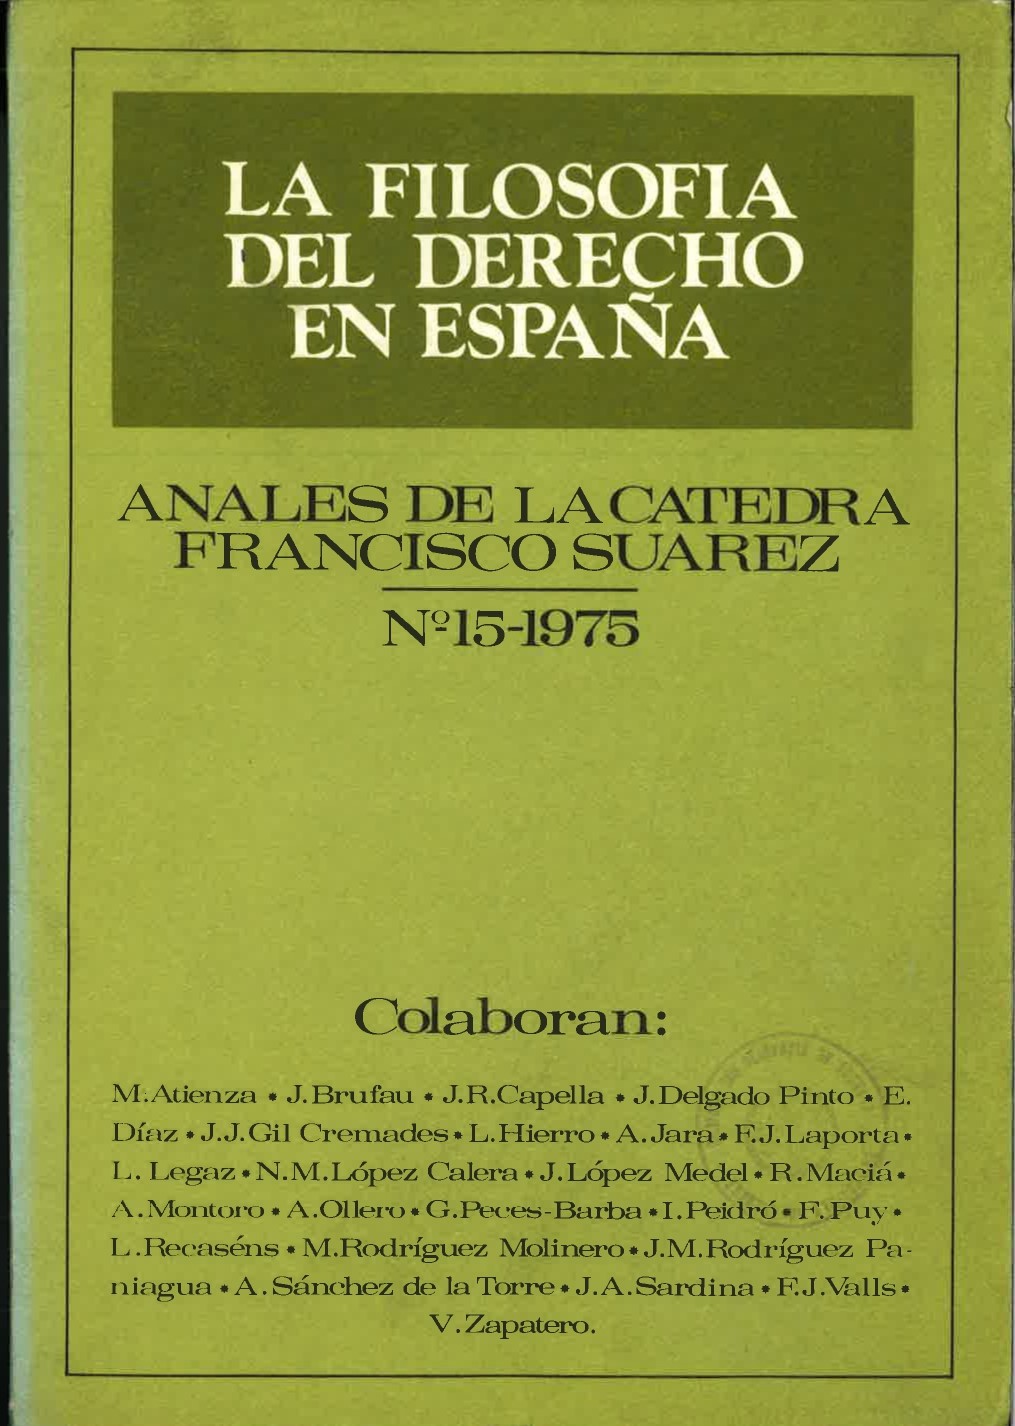 					Ver Vol. 15 (1975): La filosofía del derecho en España
				